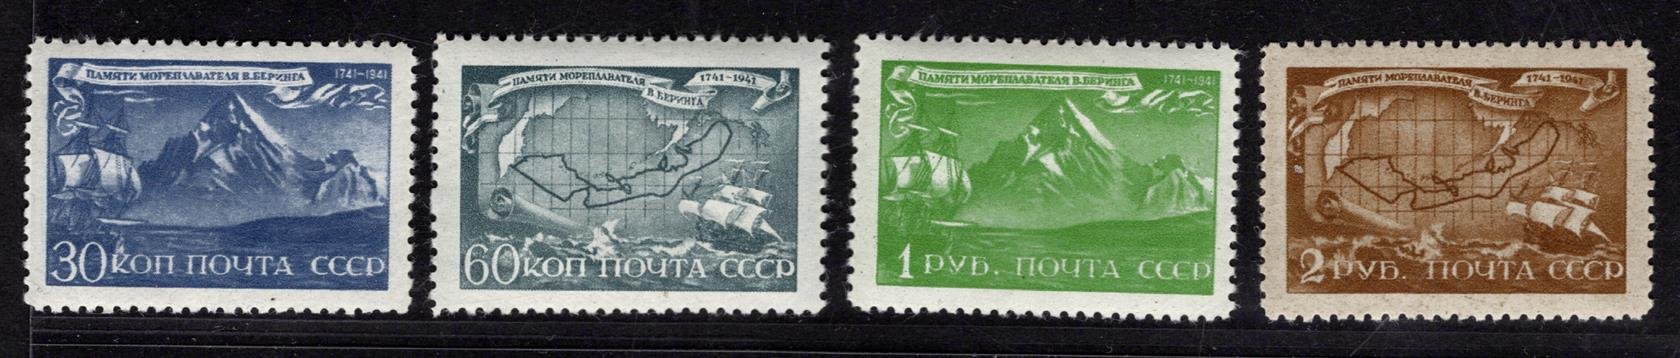 Sovětský svaz - Mi. 856 - 9, výročí úmrtí Beringa, kompletní řada